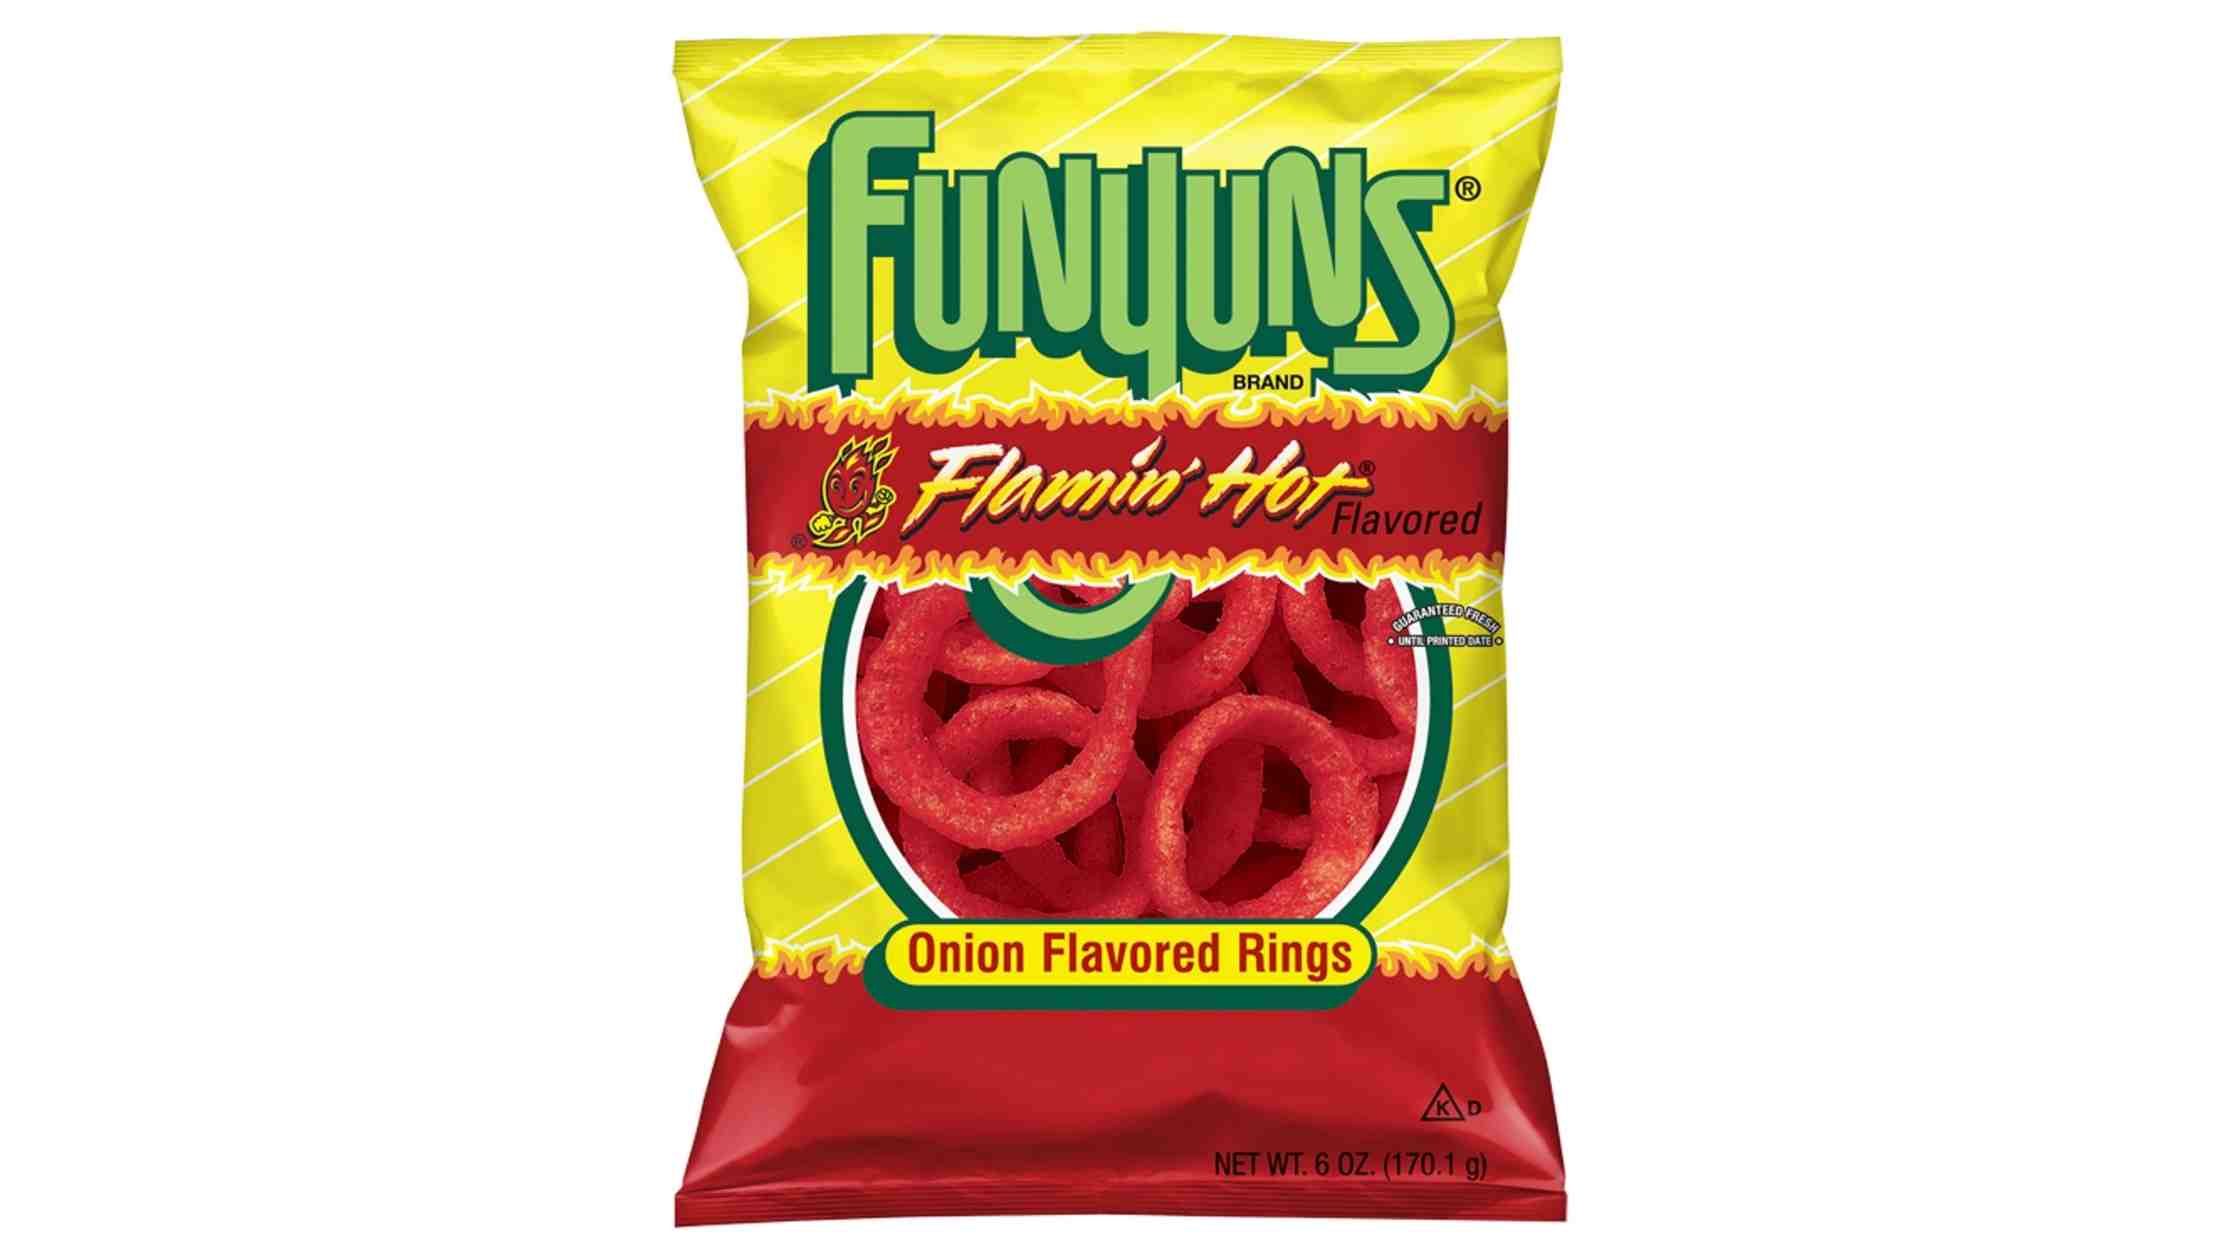 Hot Funyuns discontinued 2022